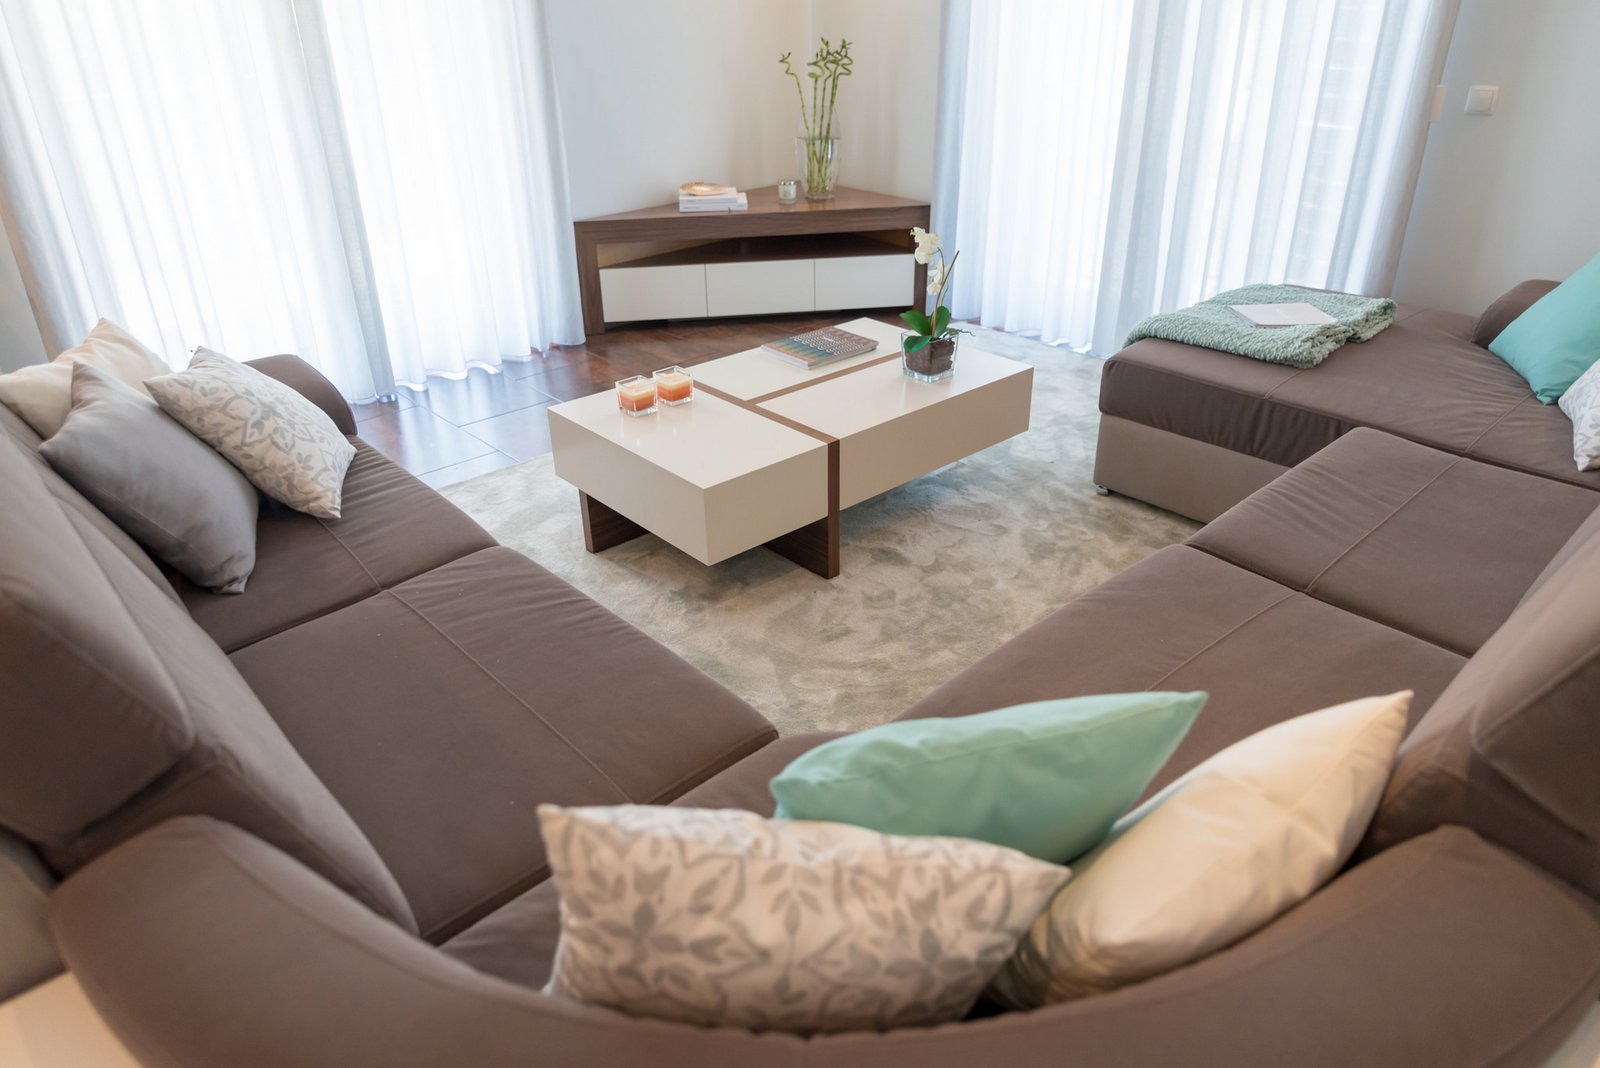 Ângela Pinheiro - Decoração de Interiores - Home Design - Decoração de Interiores - Sala de Família